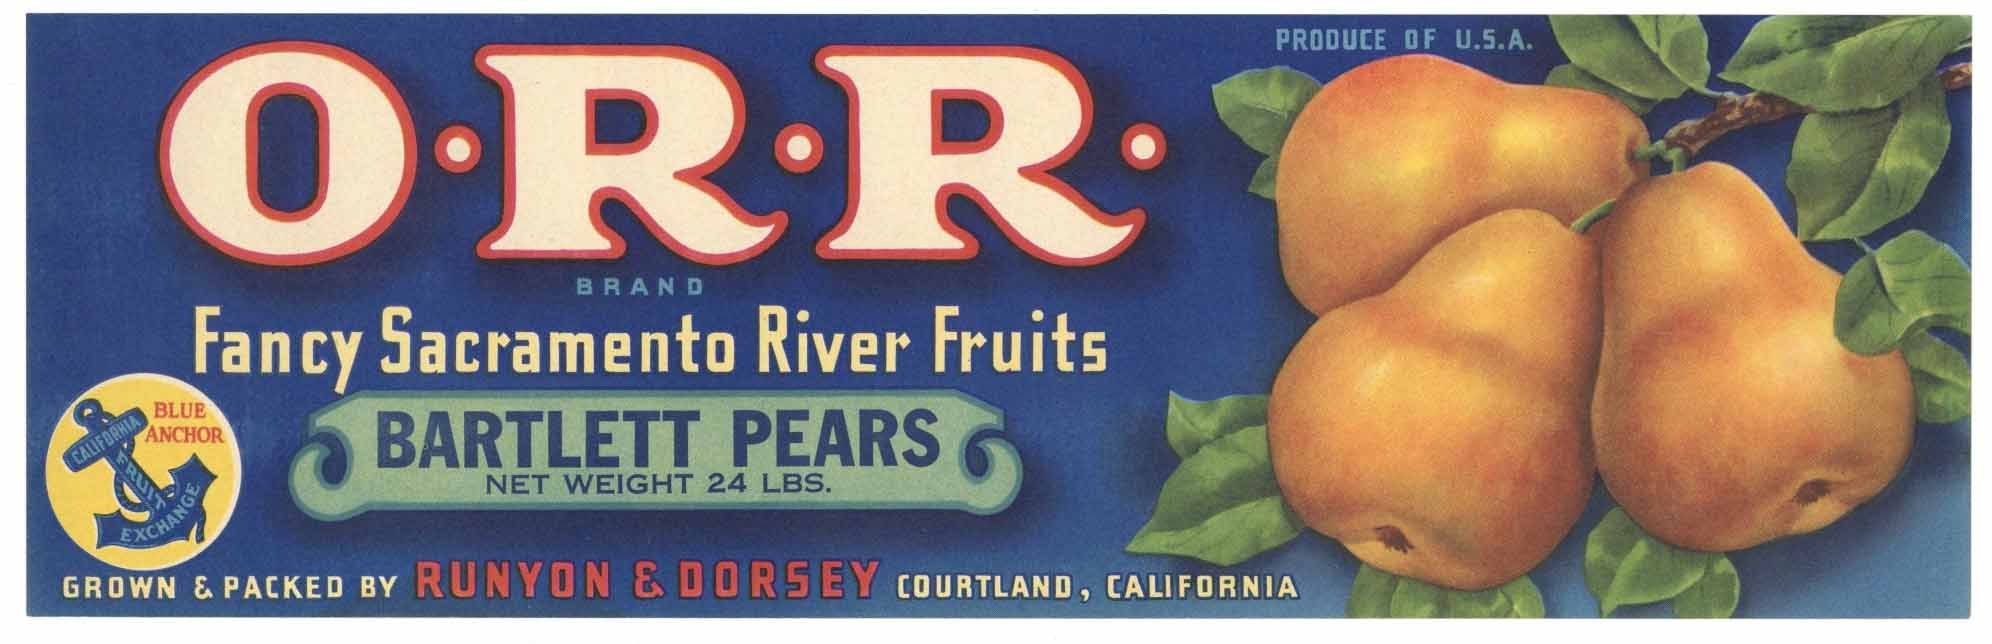 ORR Brand Vintage Pear Crate Label